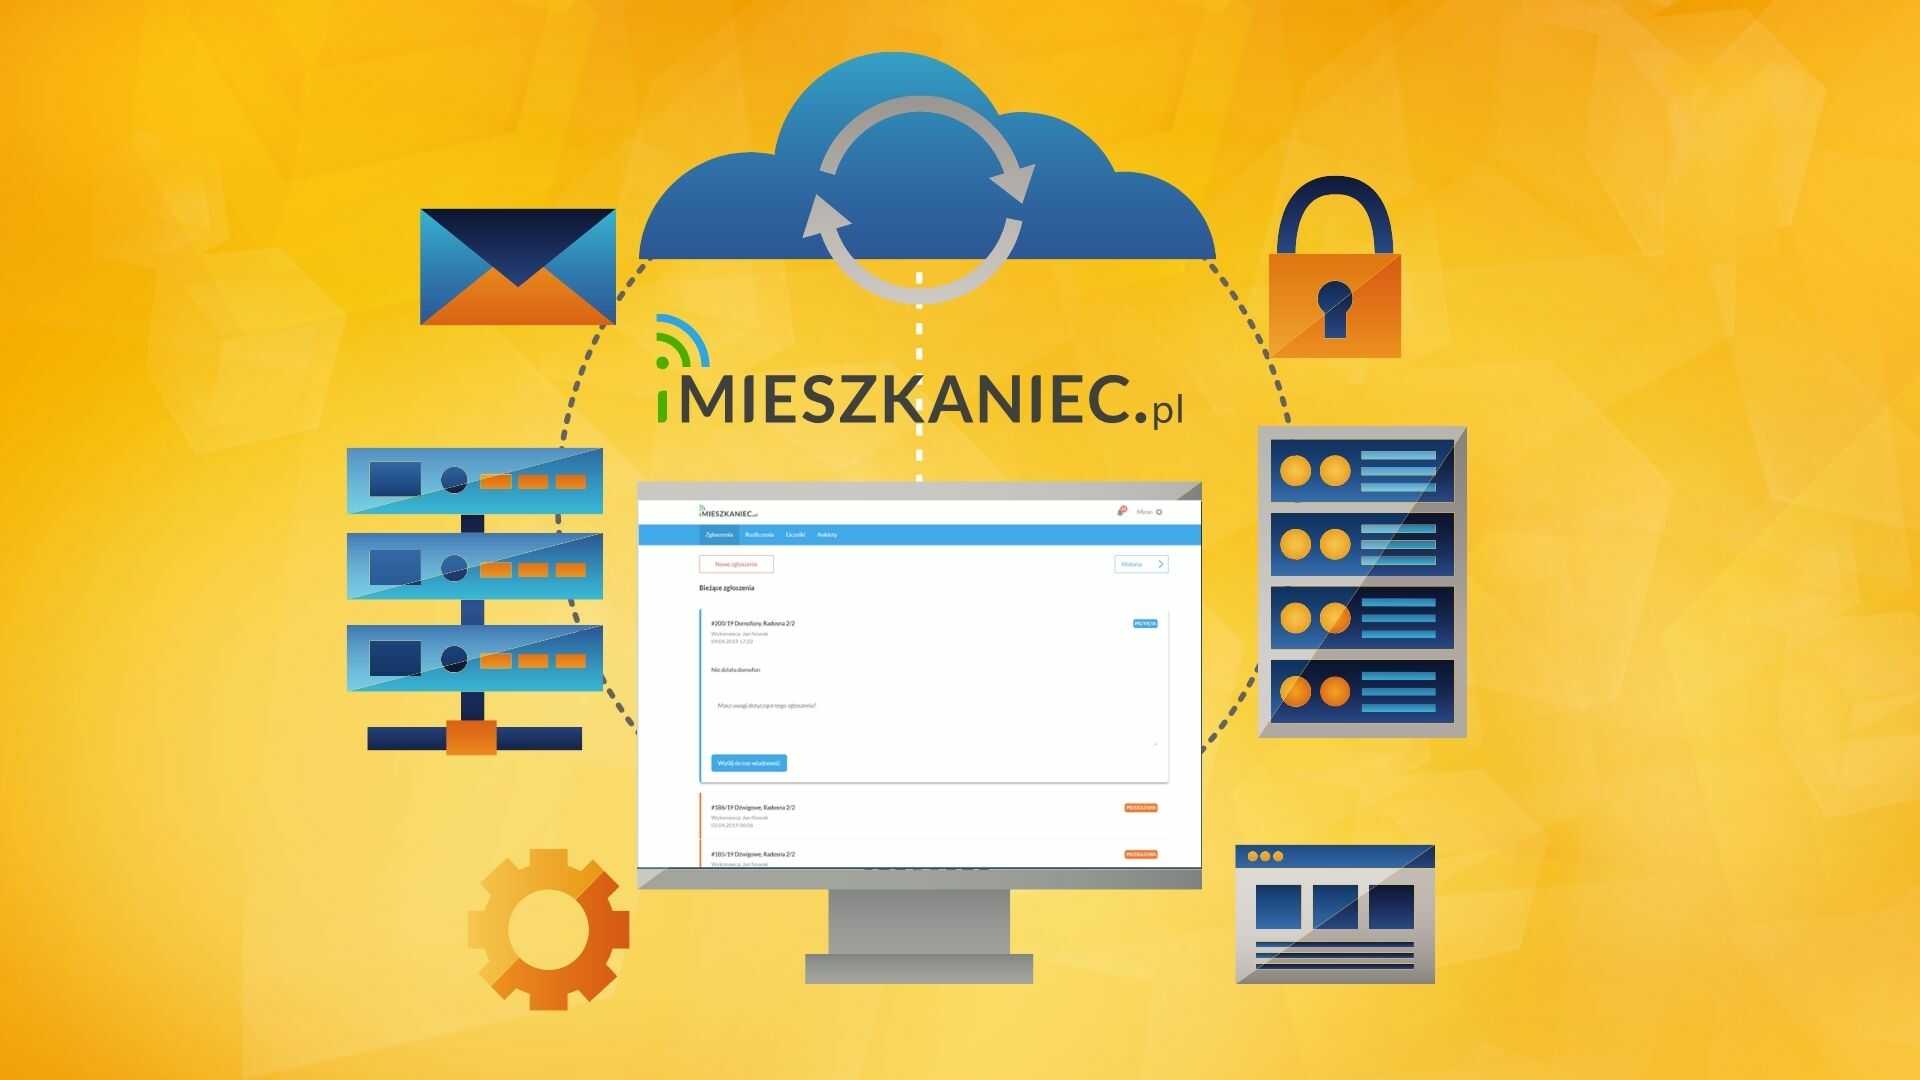 Migracja sytemu iMieszkaniec.pl na platformę Azure w oparciu o Azure Kubernetes Service (AKS)